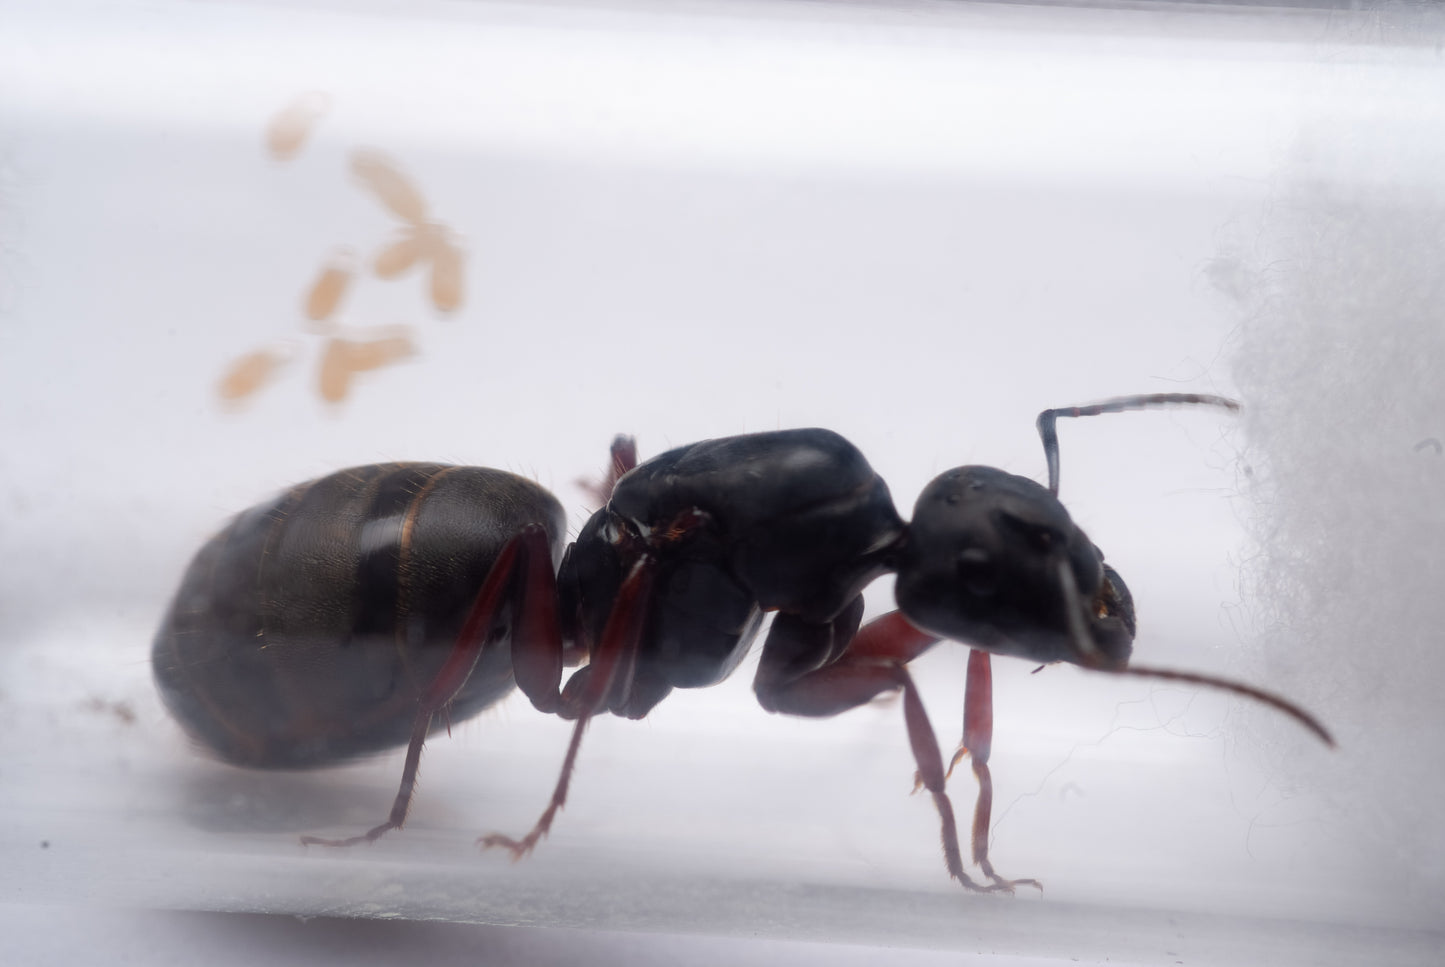 Western Carpenter Ant - Camponotus modoc